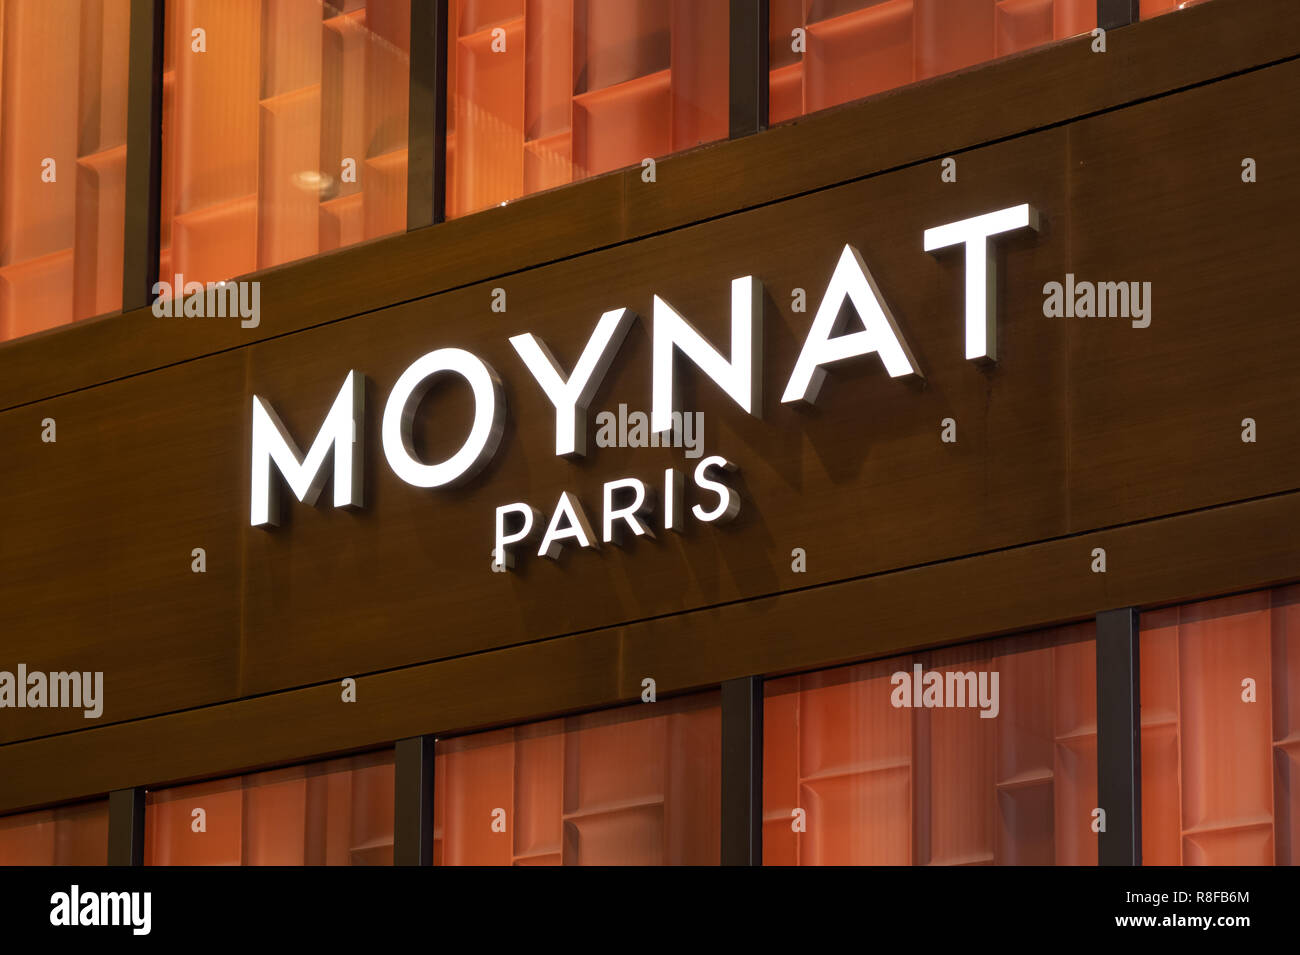 Hong Kong, April 7, 2019: Moynat store in Hong Kong Stock Photo